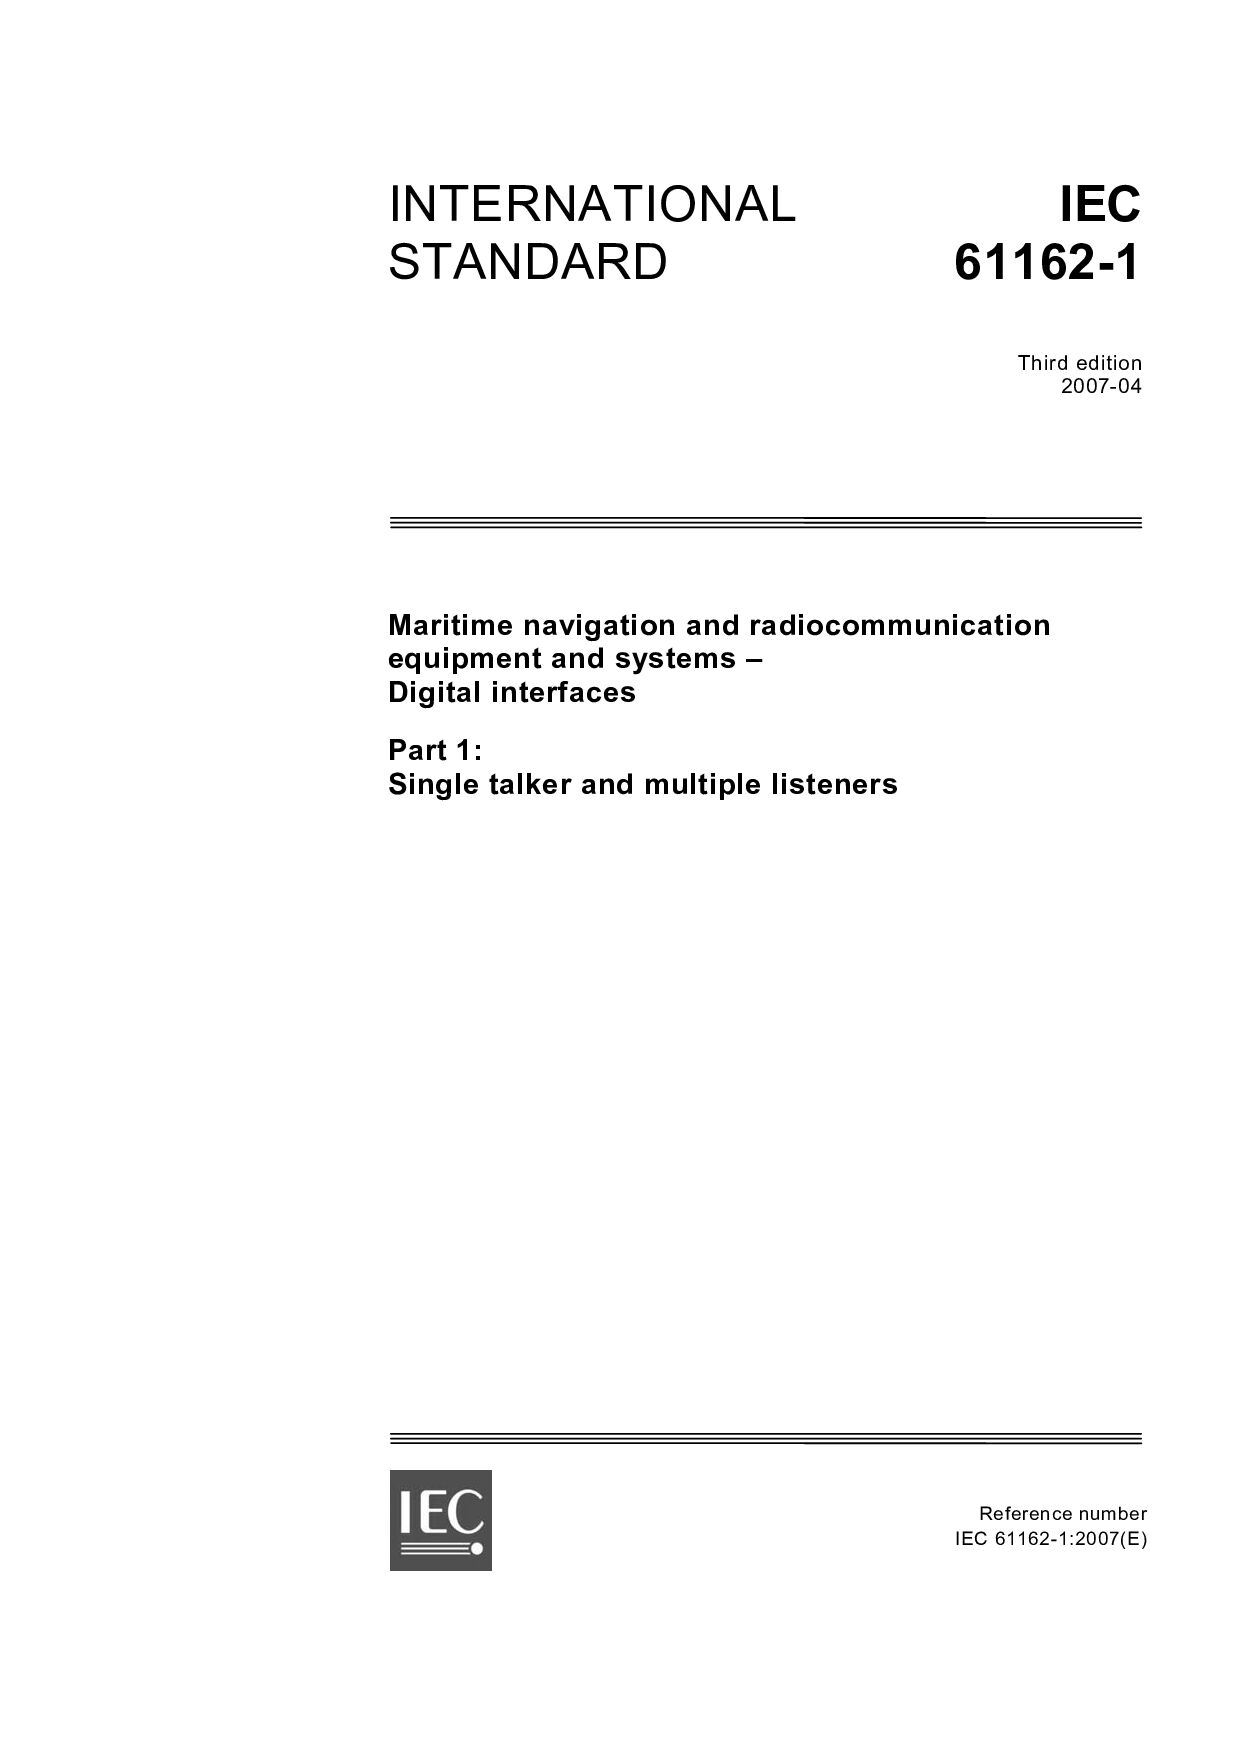 IEC 61162-1:2007